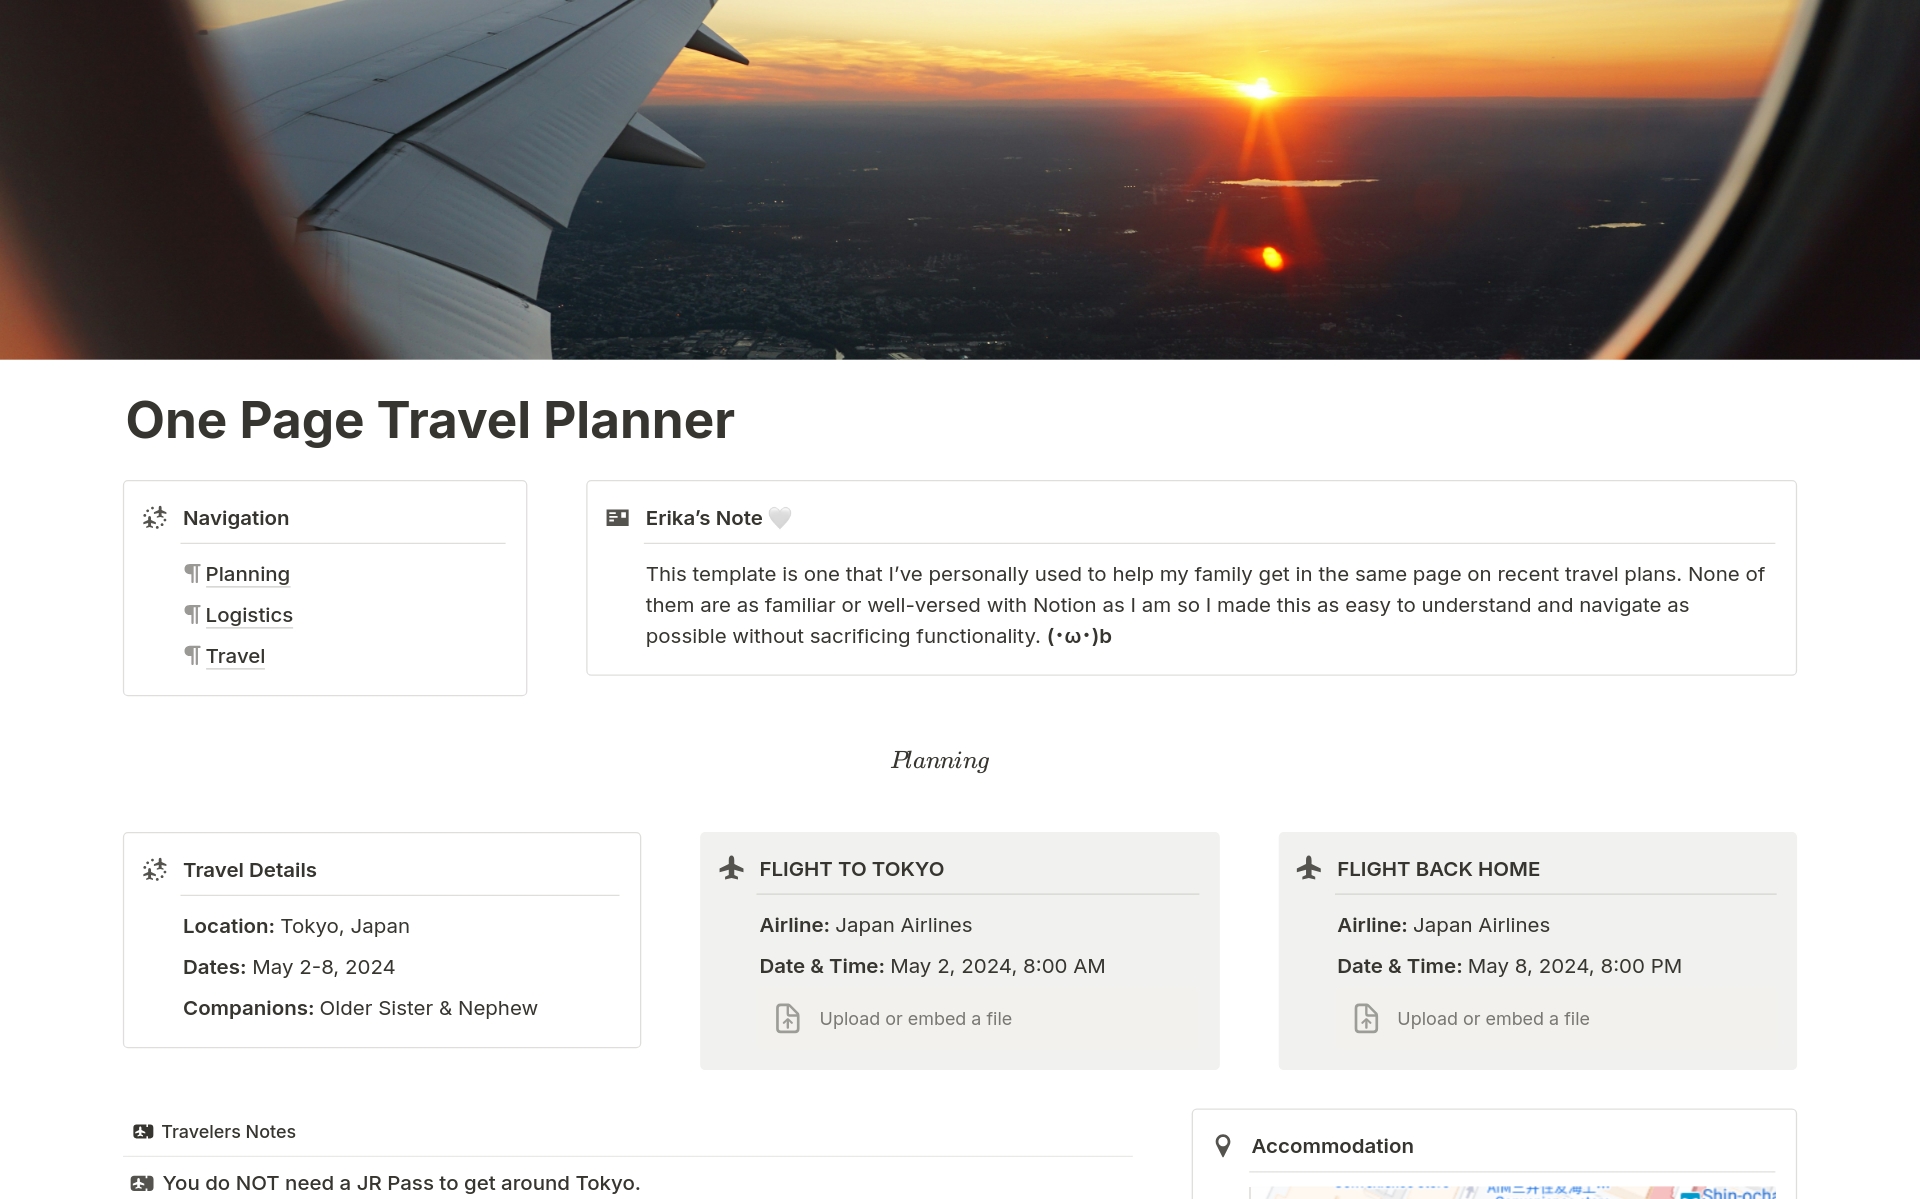 Aperçu du modèle de One Page Travel Planner